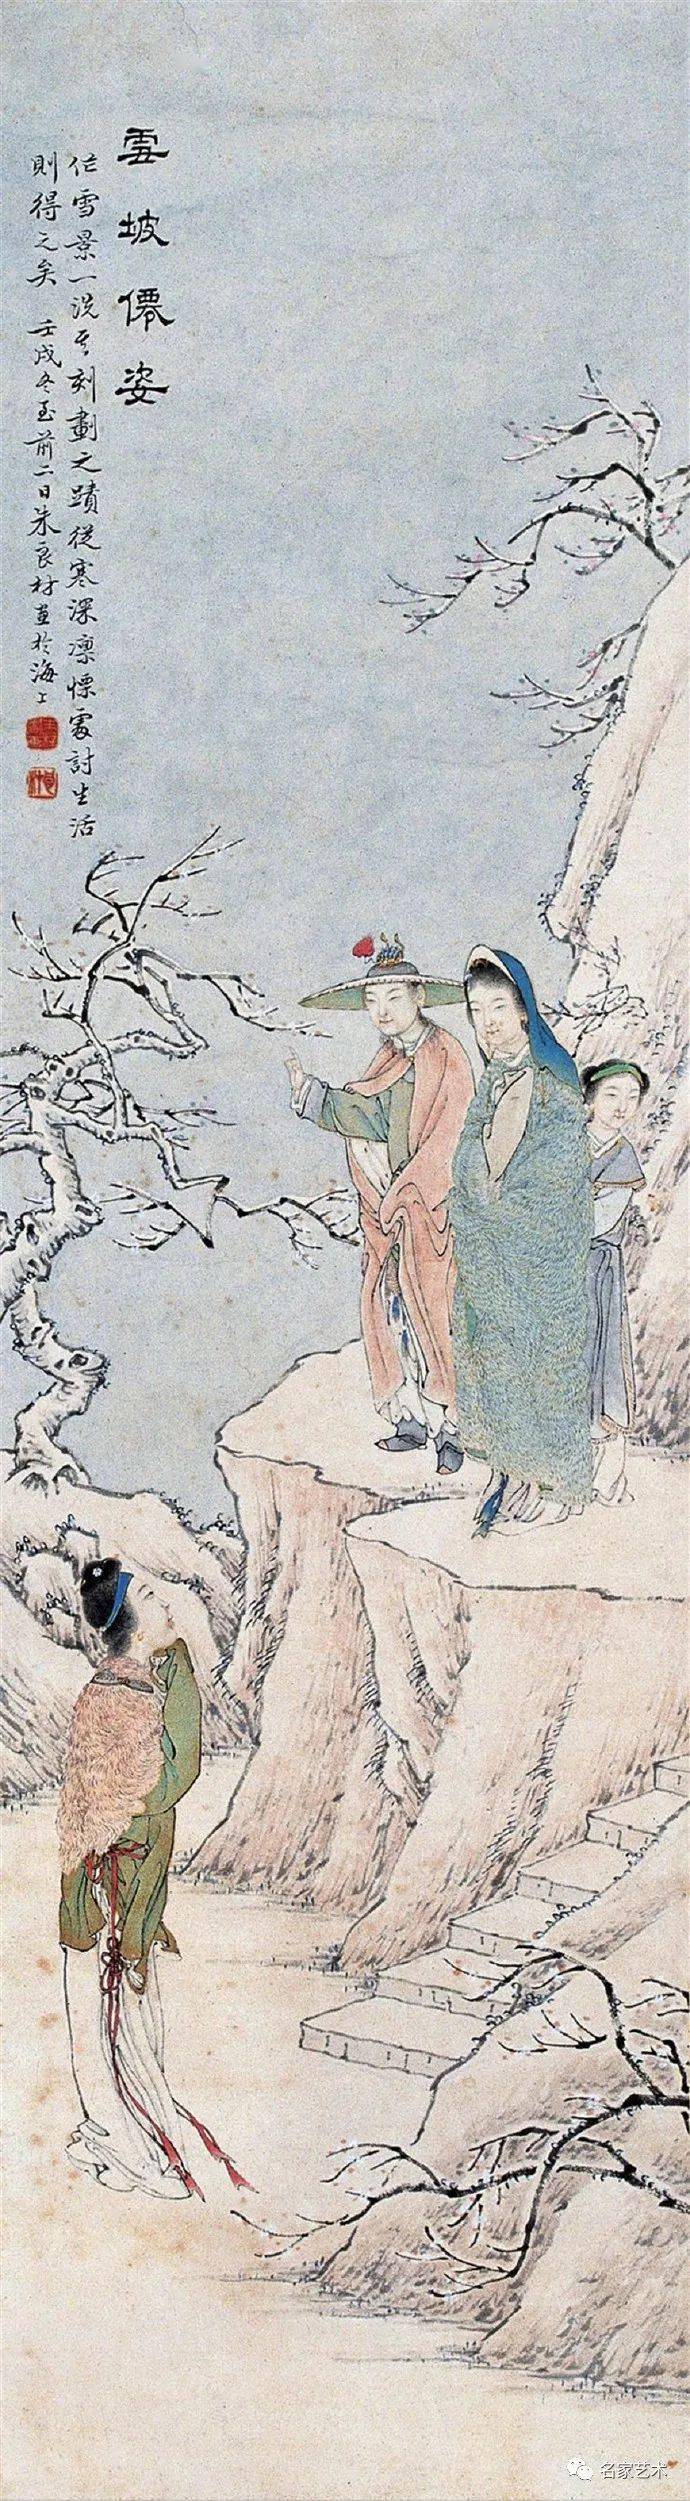 1864 年生,江苏吴县人.清末海派人物画家钱慧安弟子.